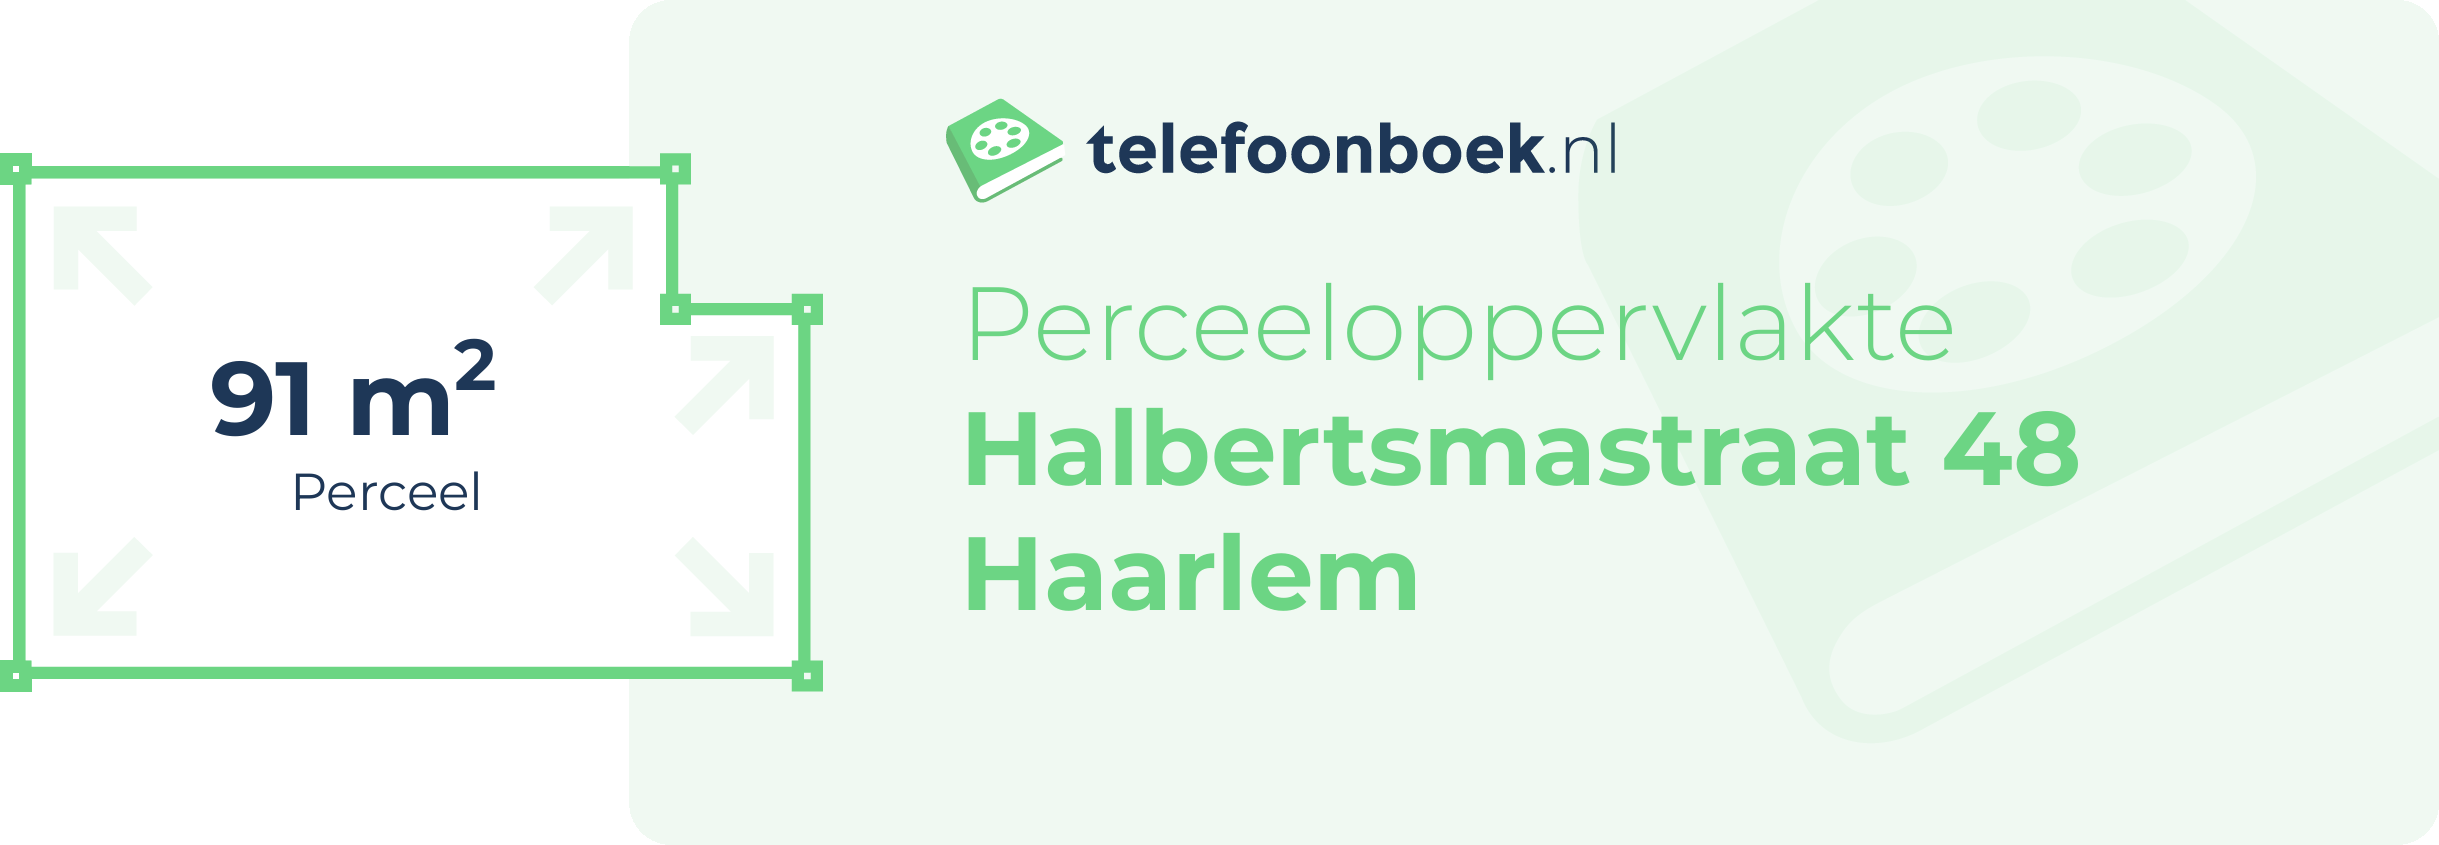 Perceeloppervlakte Halbertsmastraat 48 Haarlem